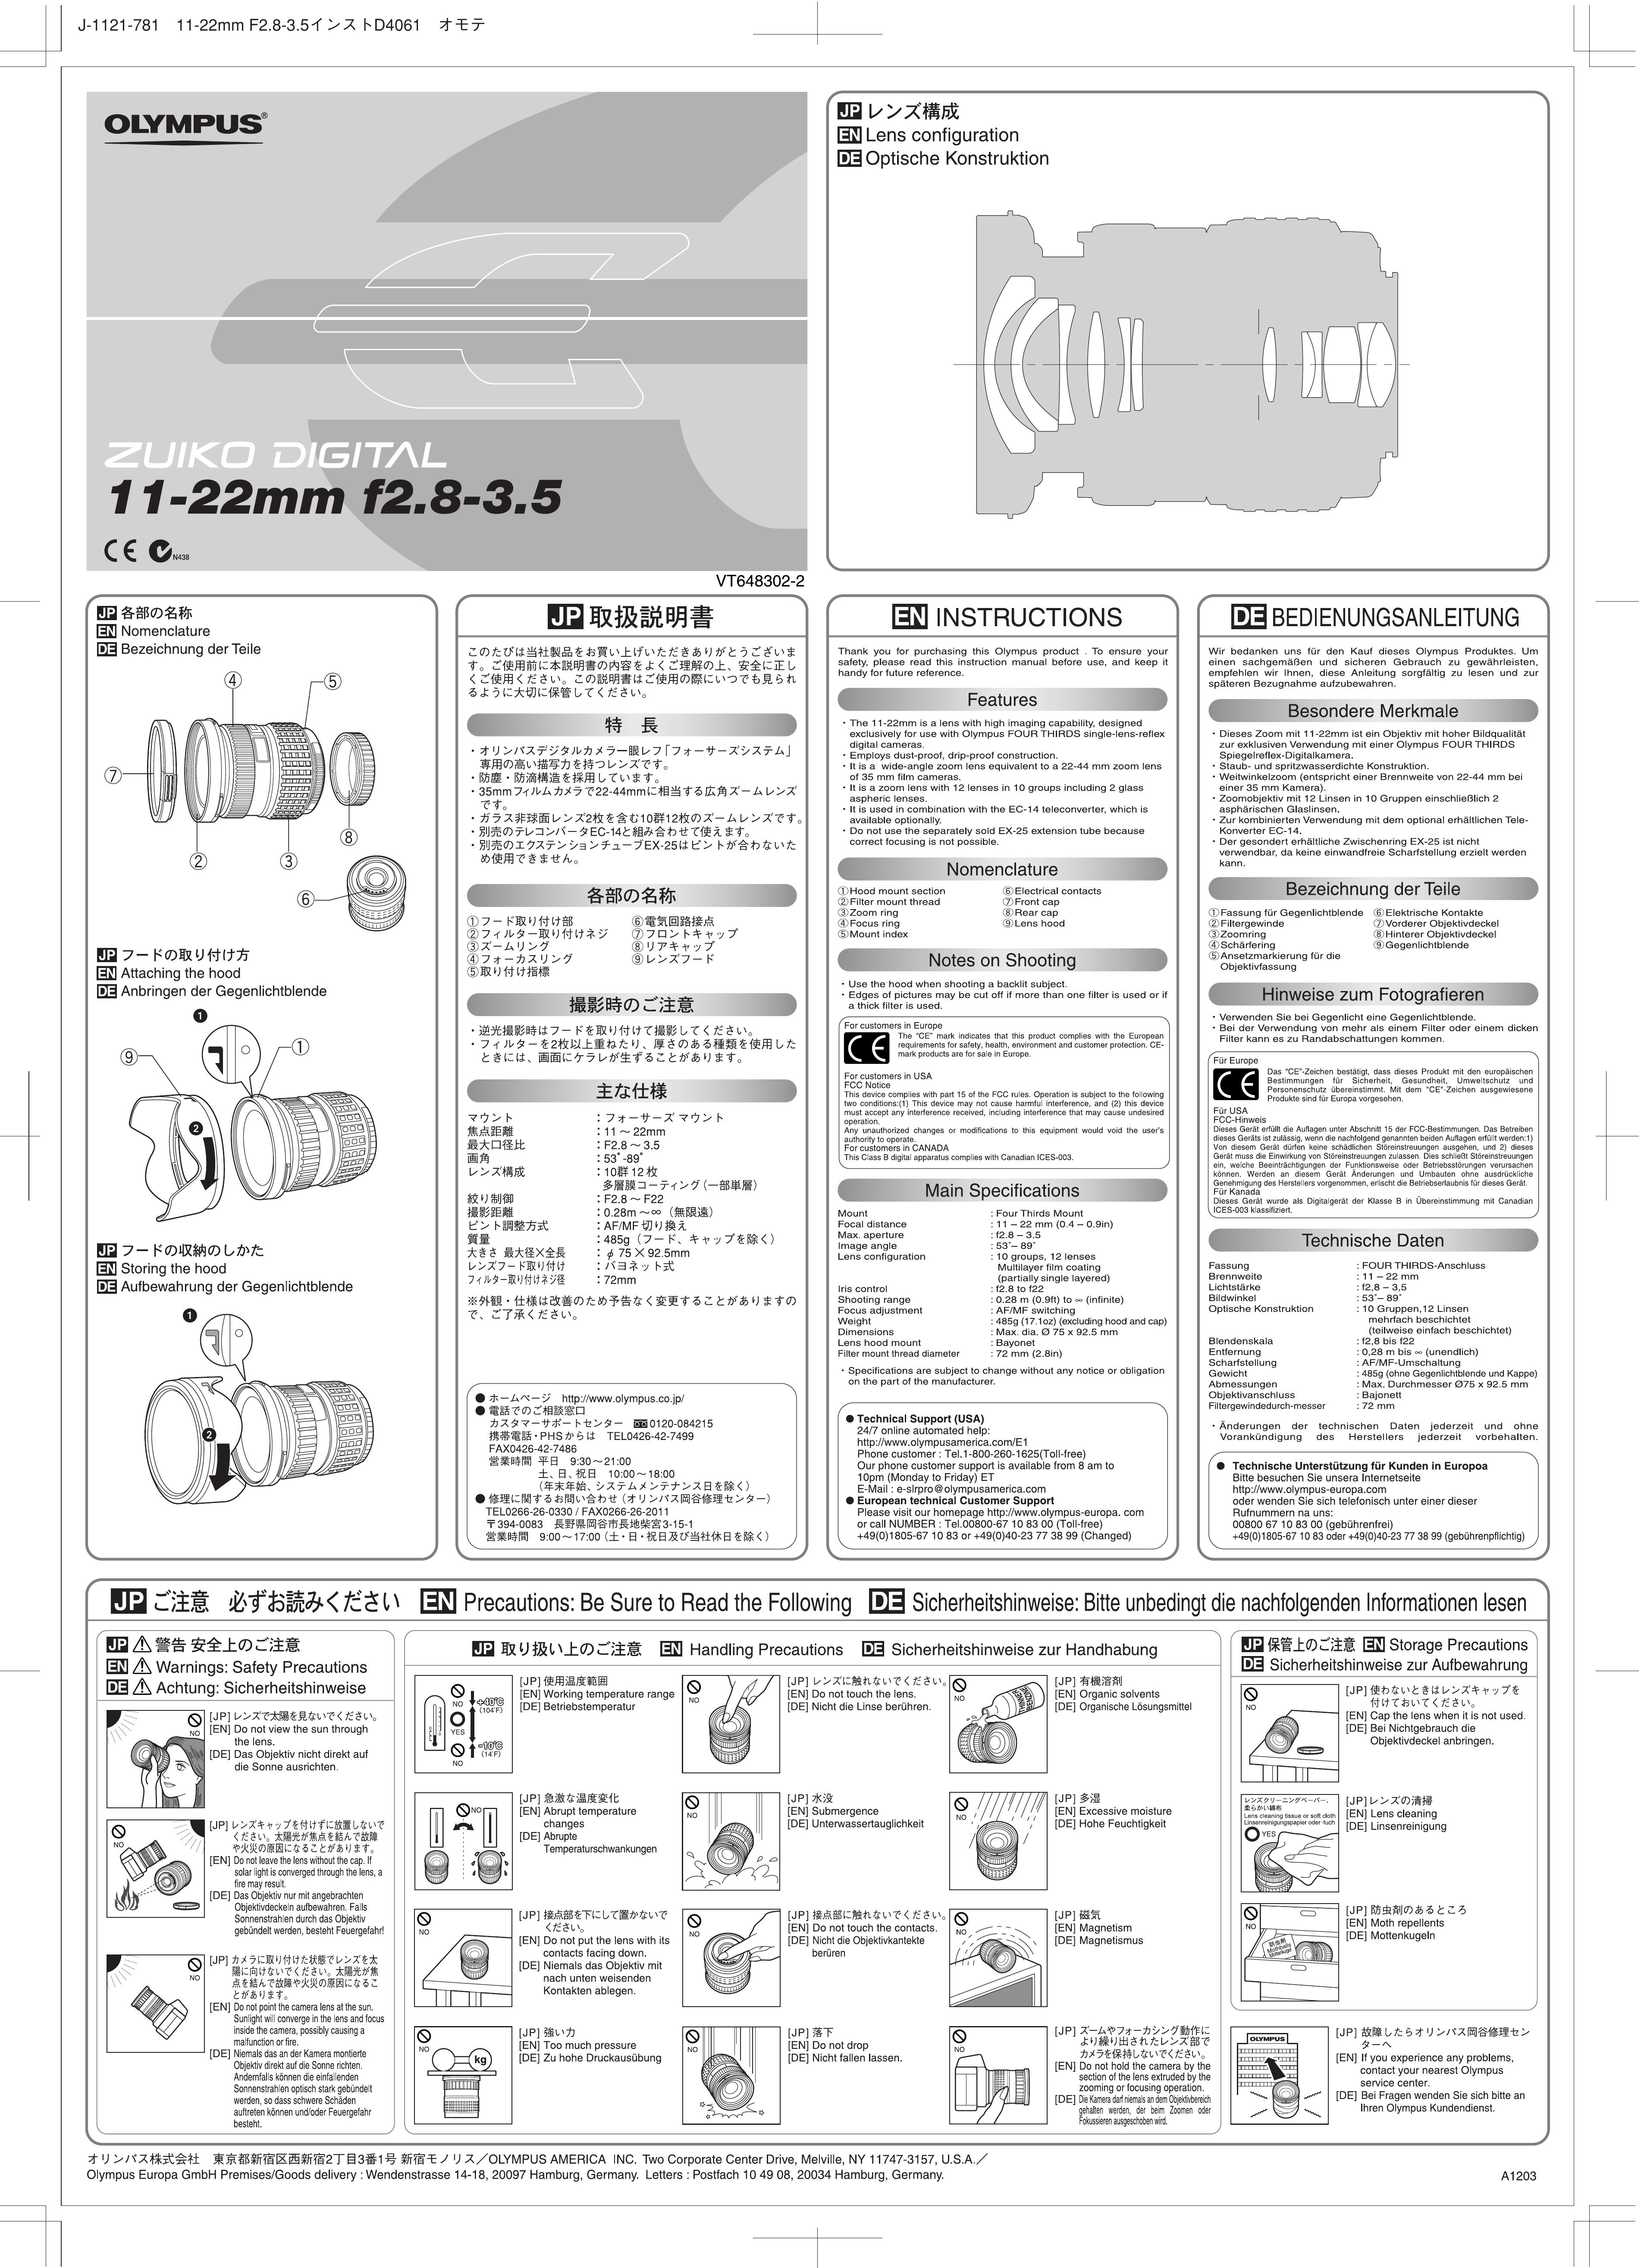 Olympus 261007 Camera Lens User Manual